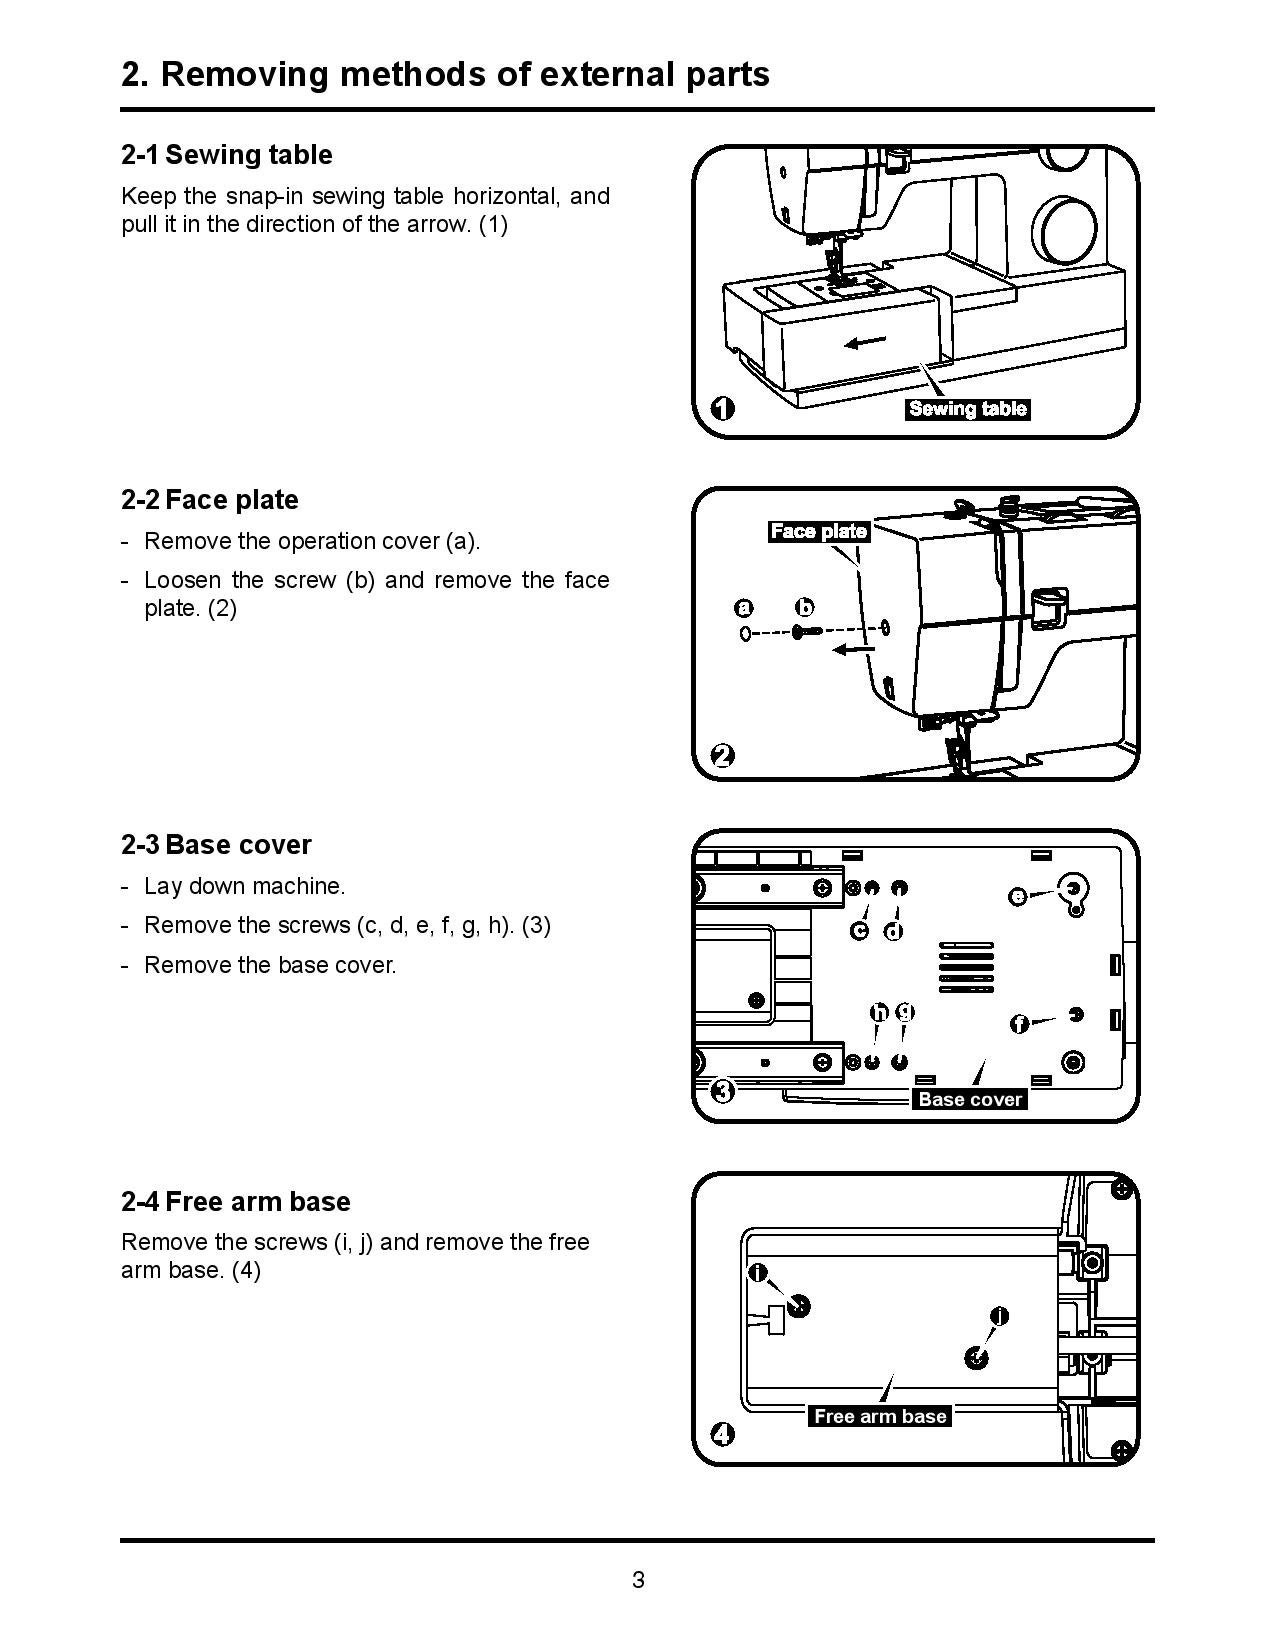 Singer 4411-4452-5511-5554 Sewing Machine Service Manual